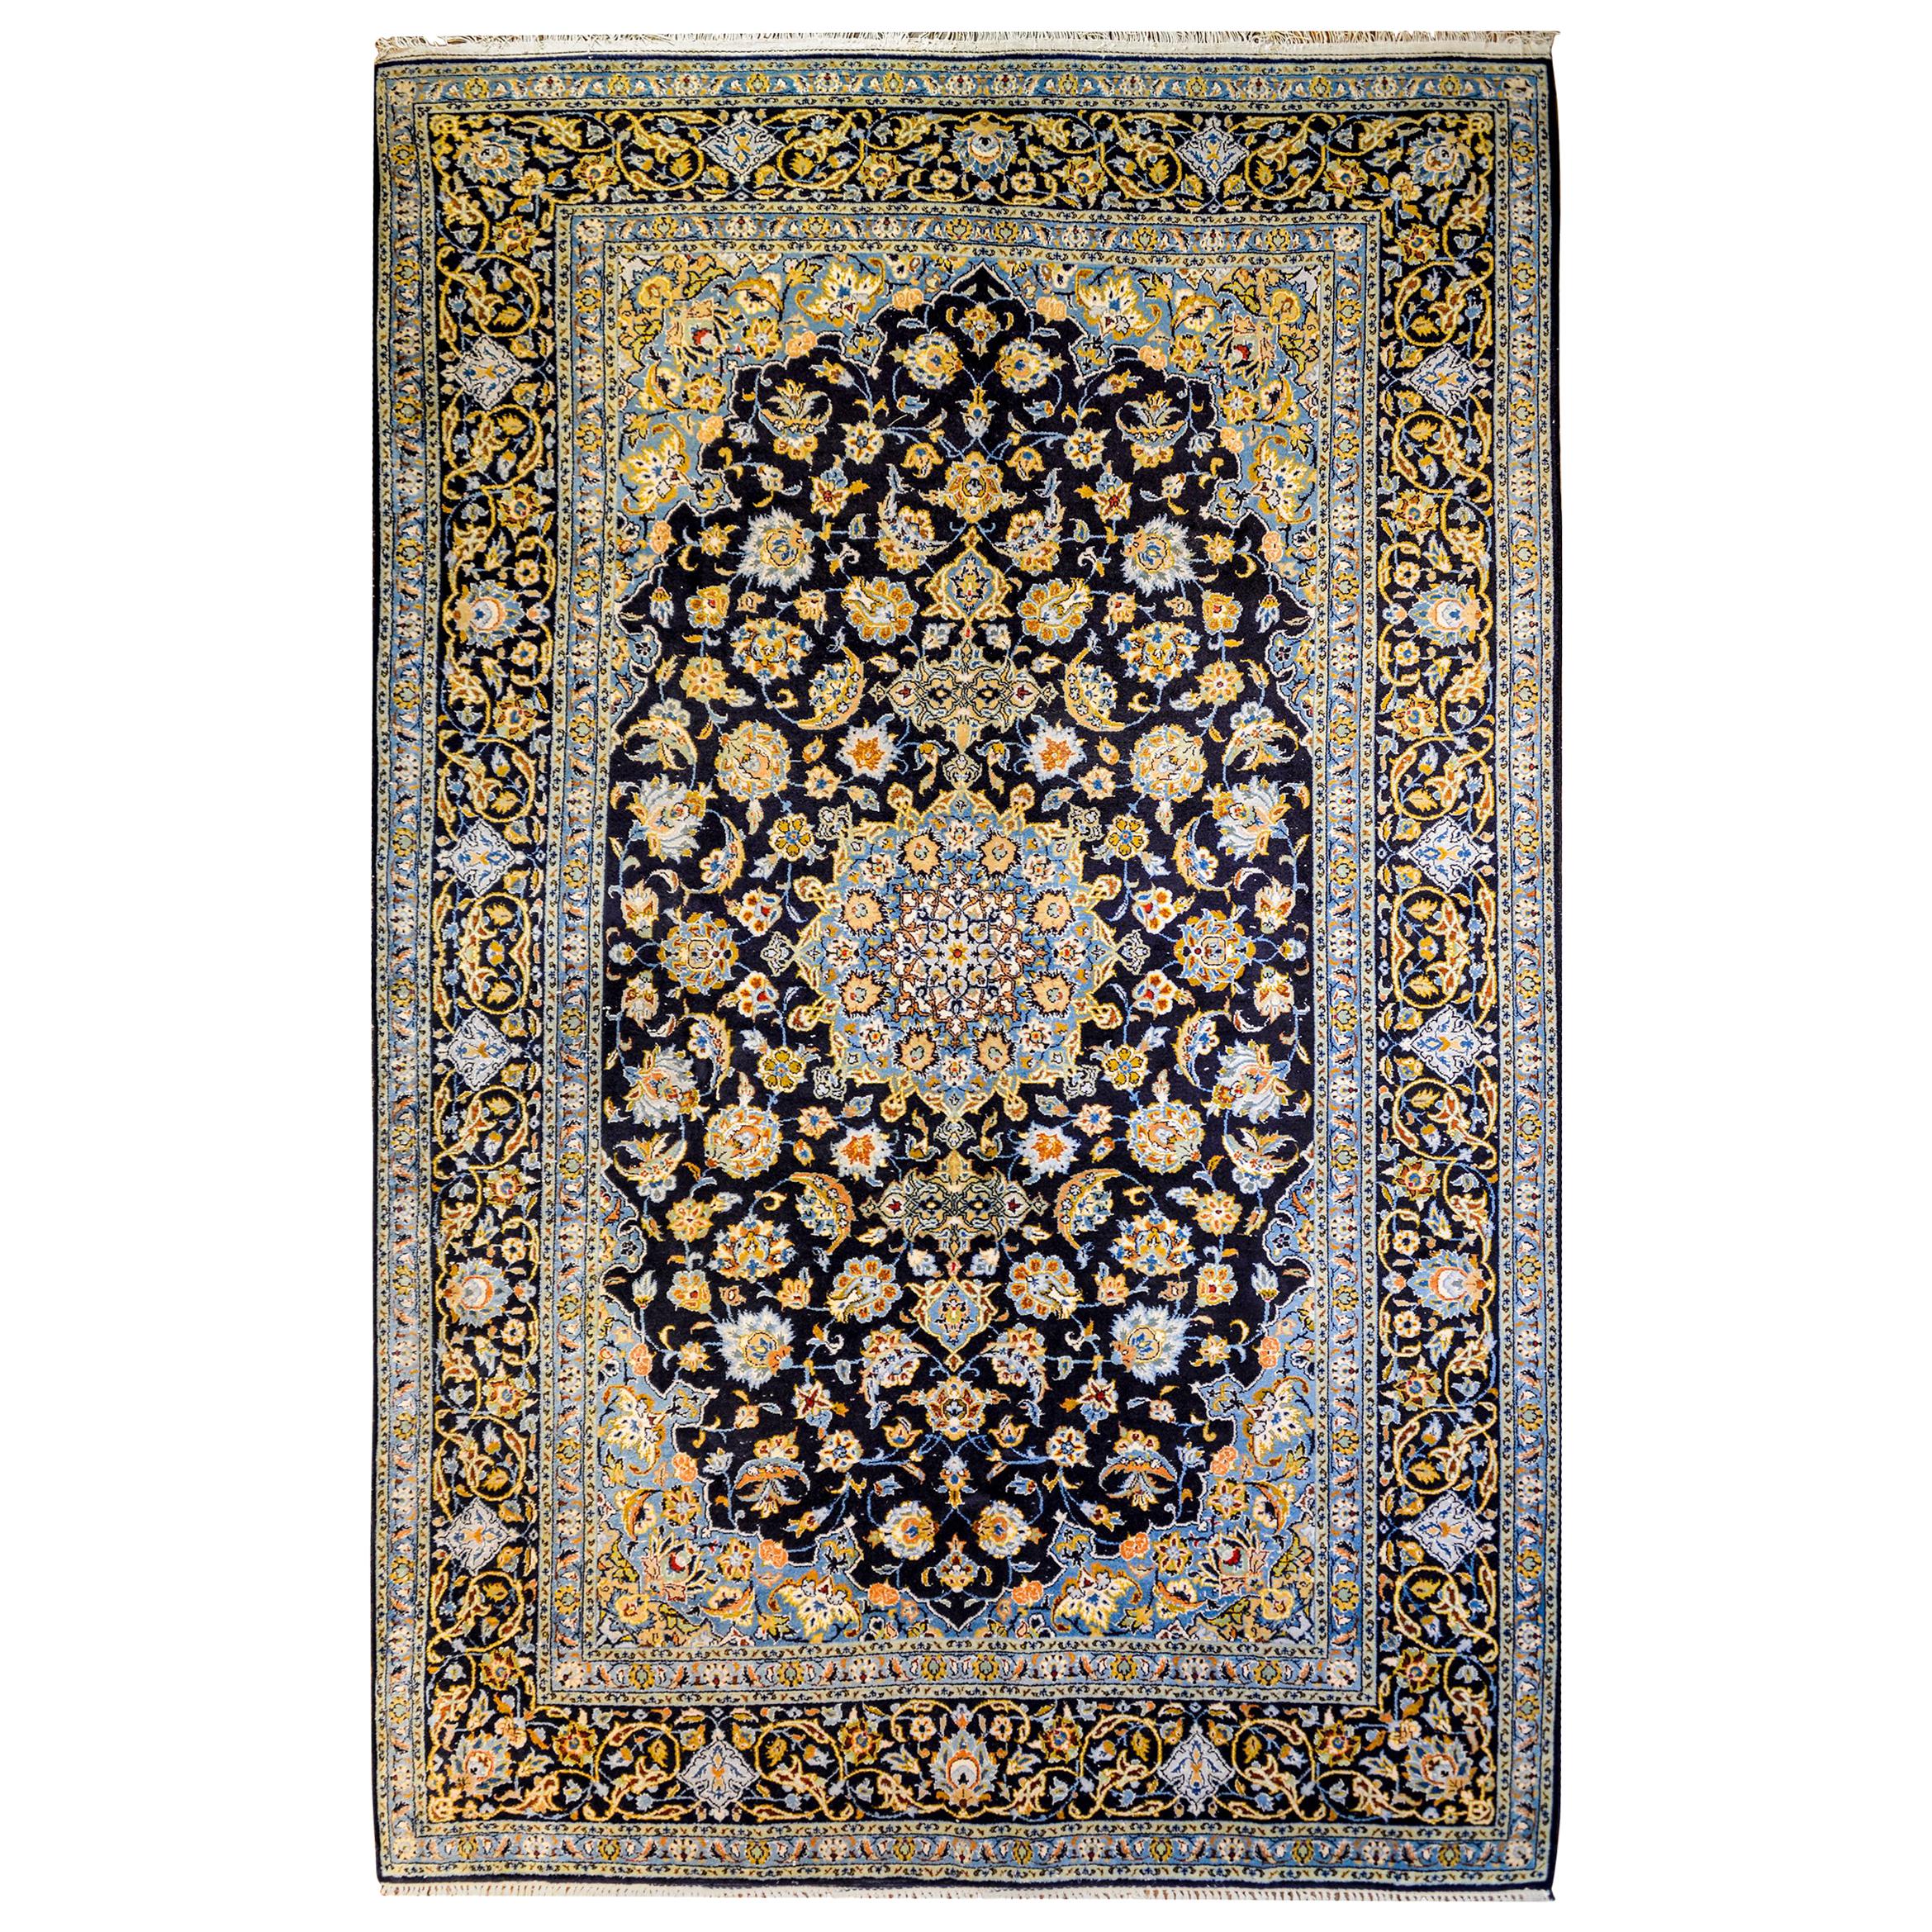 Teheran-Teppich aus dem frühen 20. Jahrhundert, faszinierend